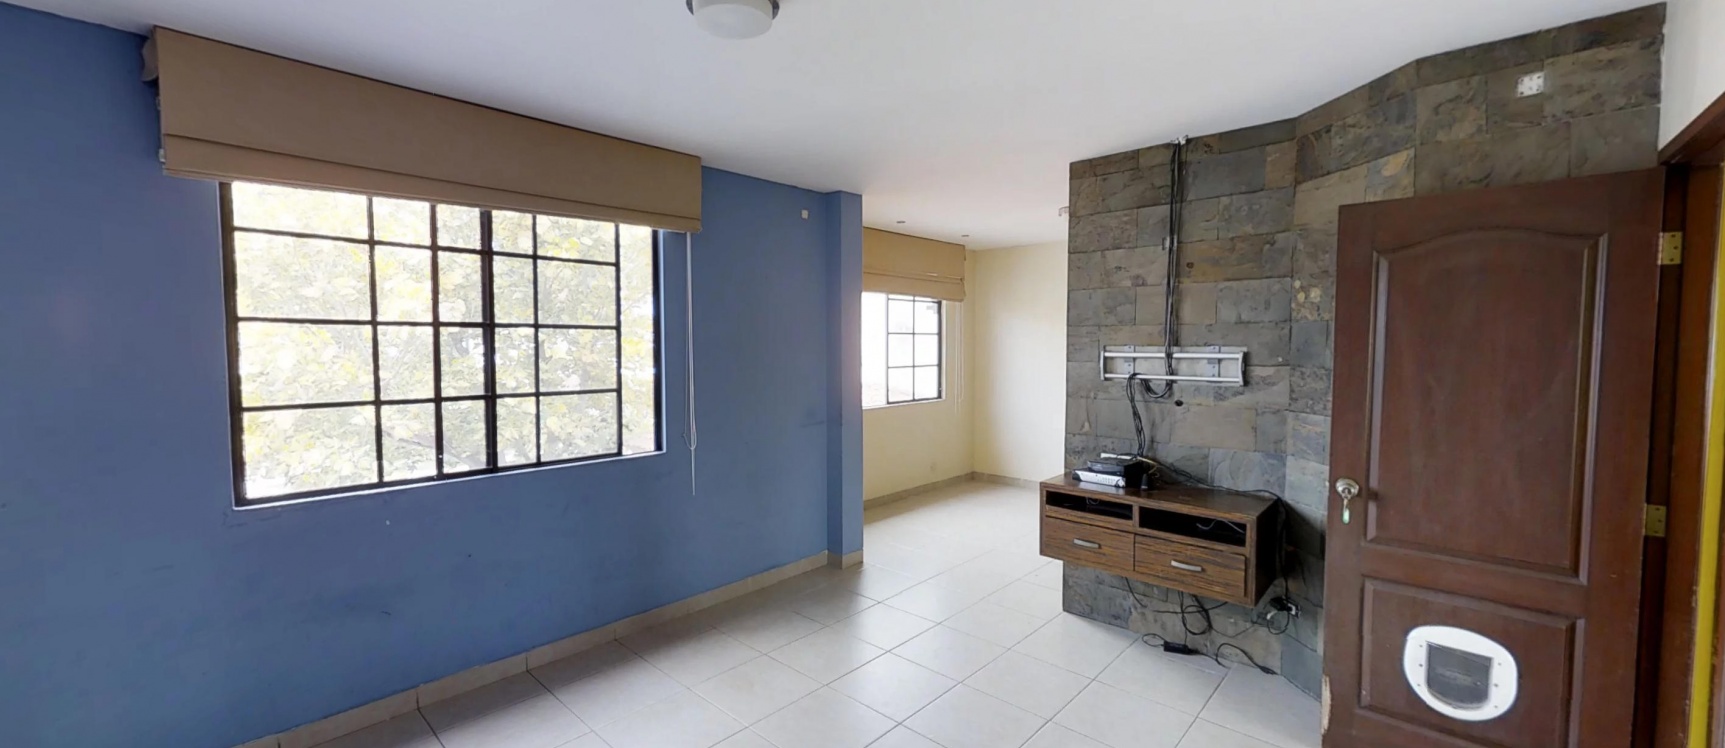 GeoBienes - Casa en venta en urbanización Terranostra via a la costa  - Plusvalia Guayaquil Casas de venta y alquiler Inmobiliaria Ecuador